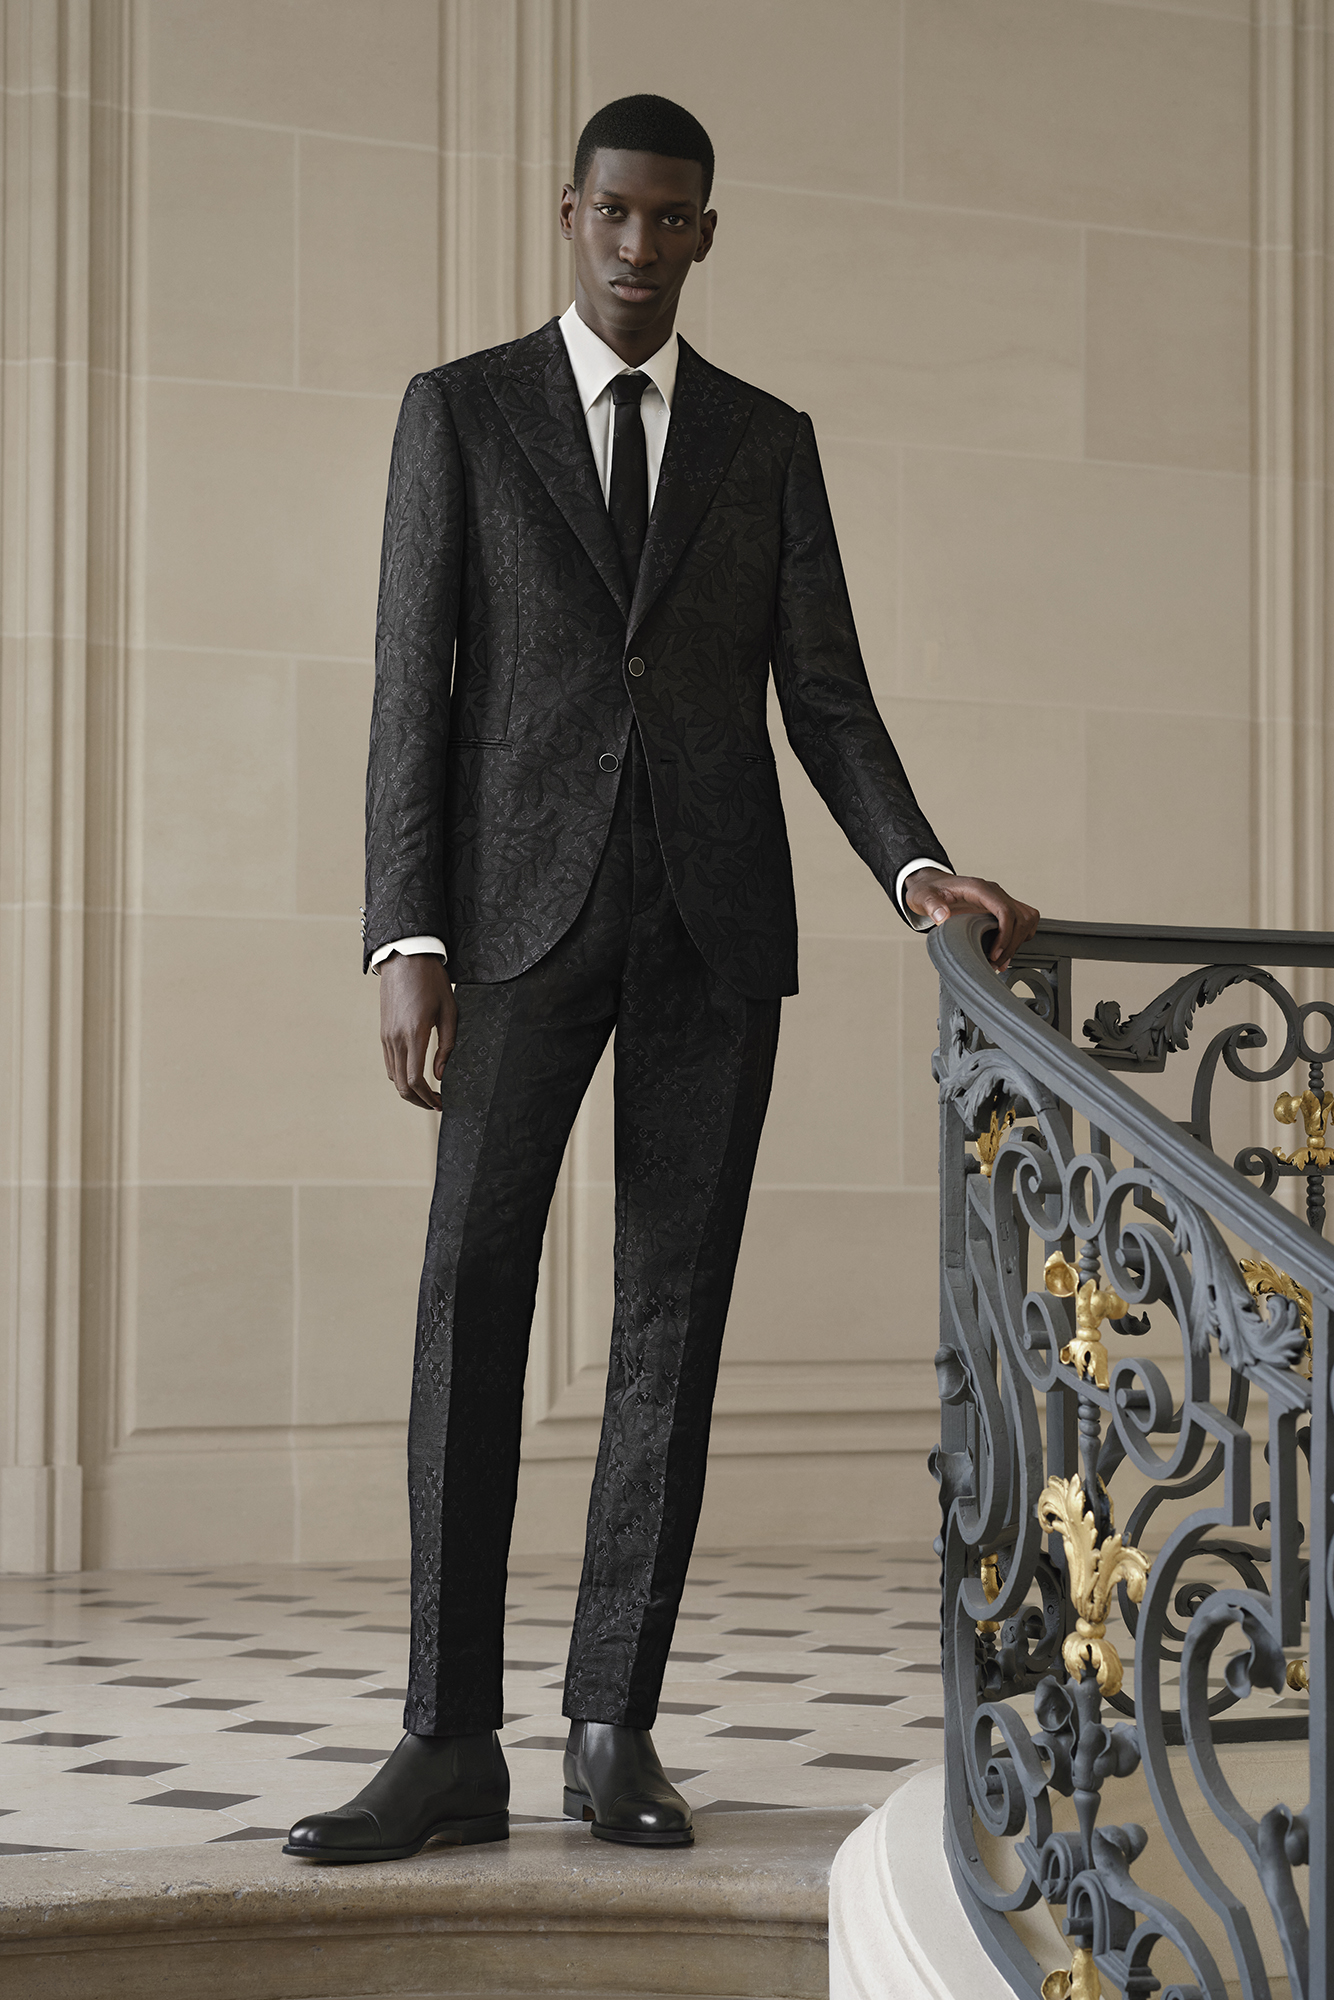 Model wearing a Louis Vuitton black suit poses